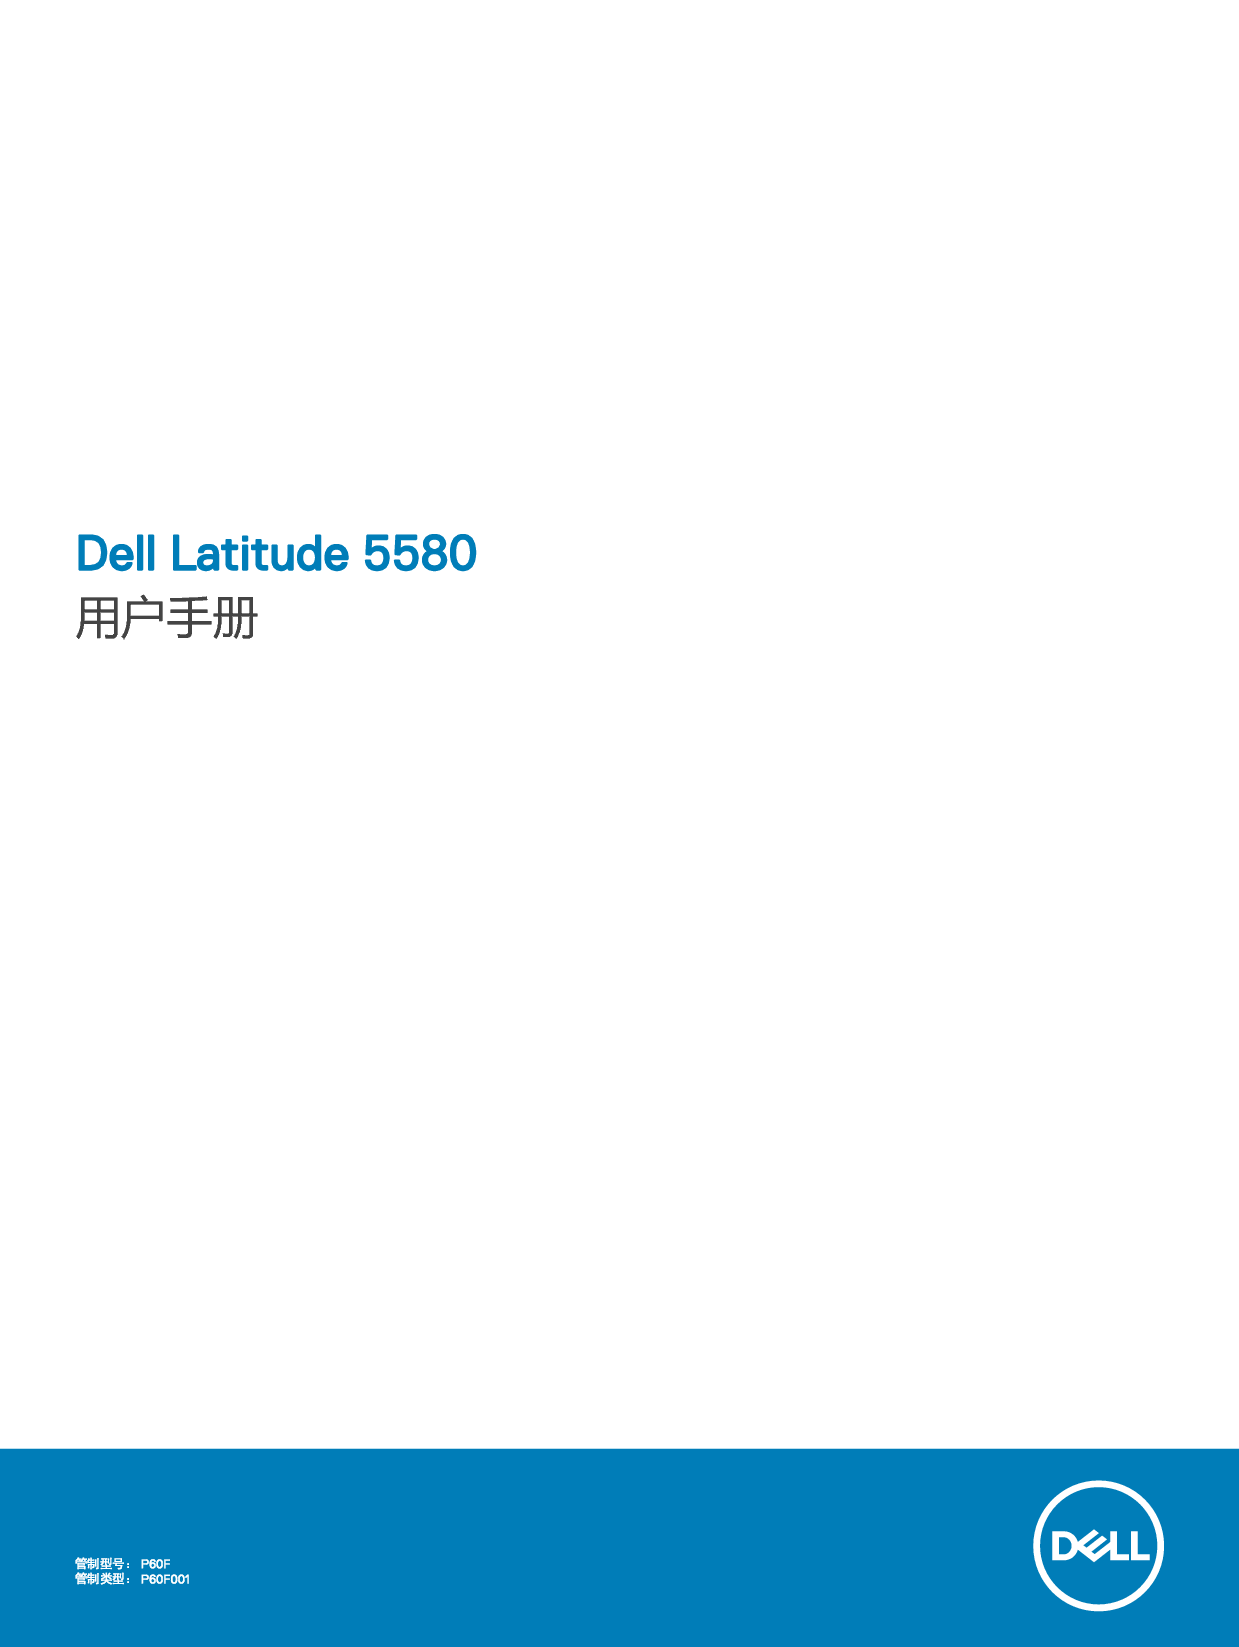 戴尔 Dell Latitude 5580 用户手册 封面